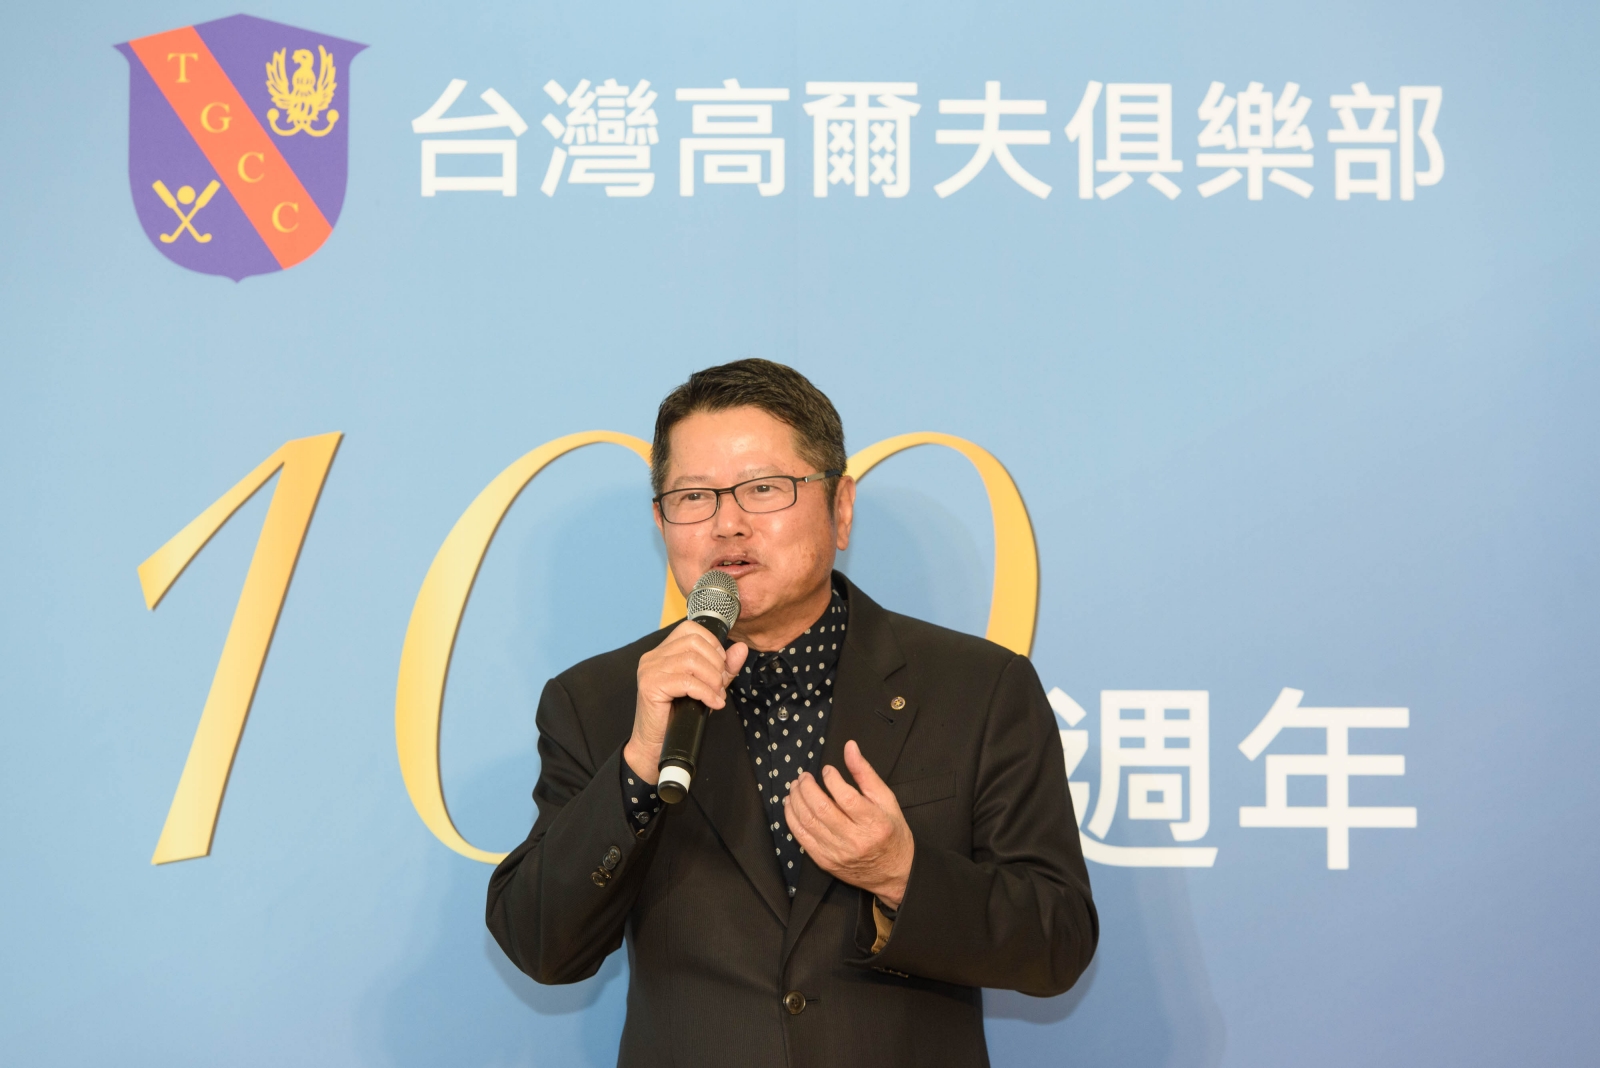 臺灣高爾夫俱樂部會長陳茂仁宣布將舉辦一系列比賽與活動慶祝老淡水球場一百週年！